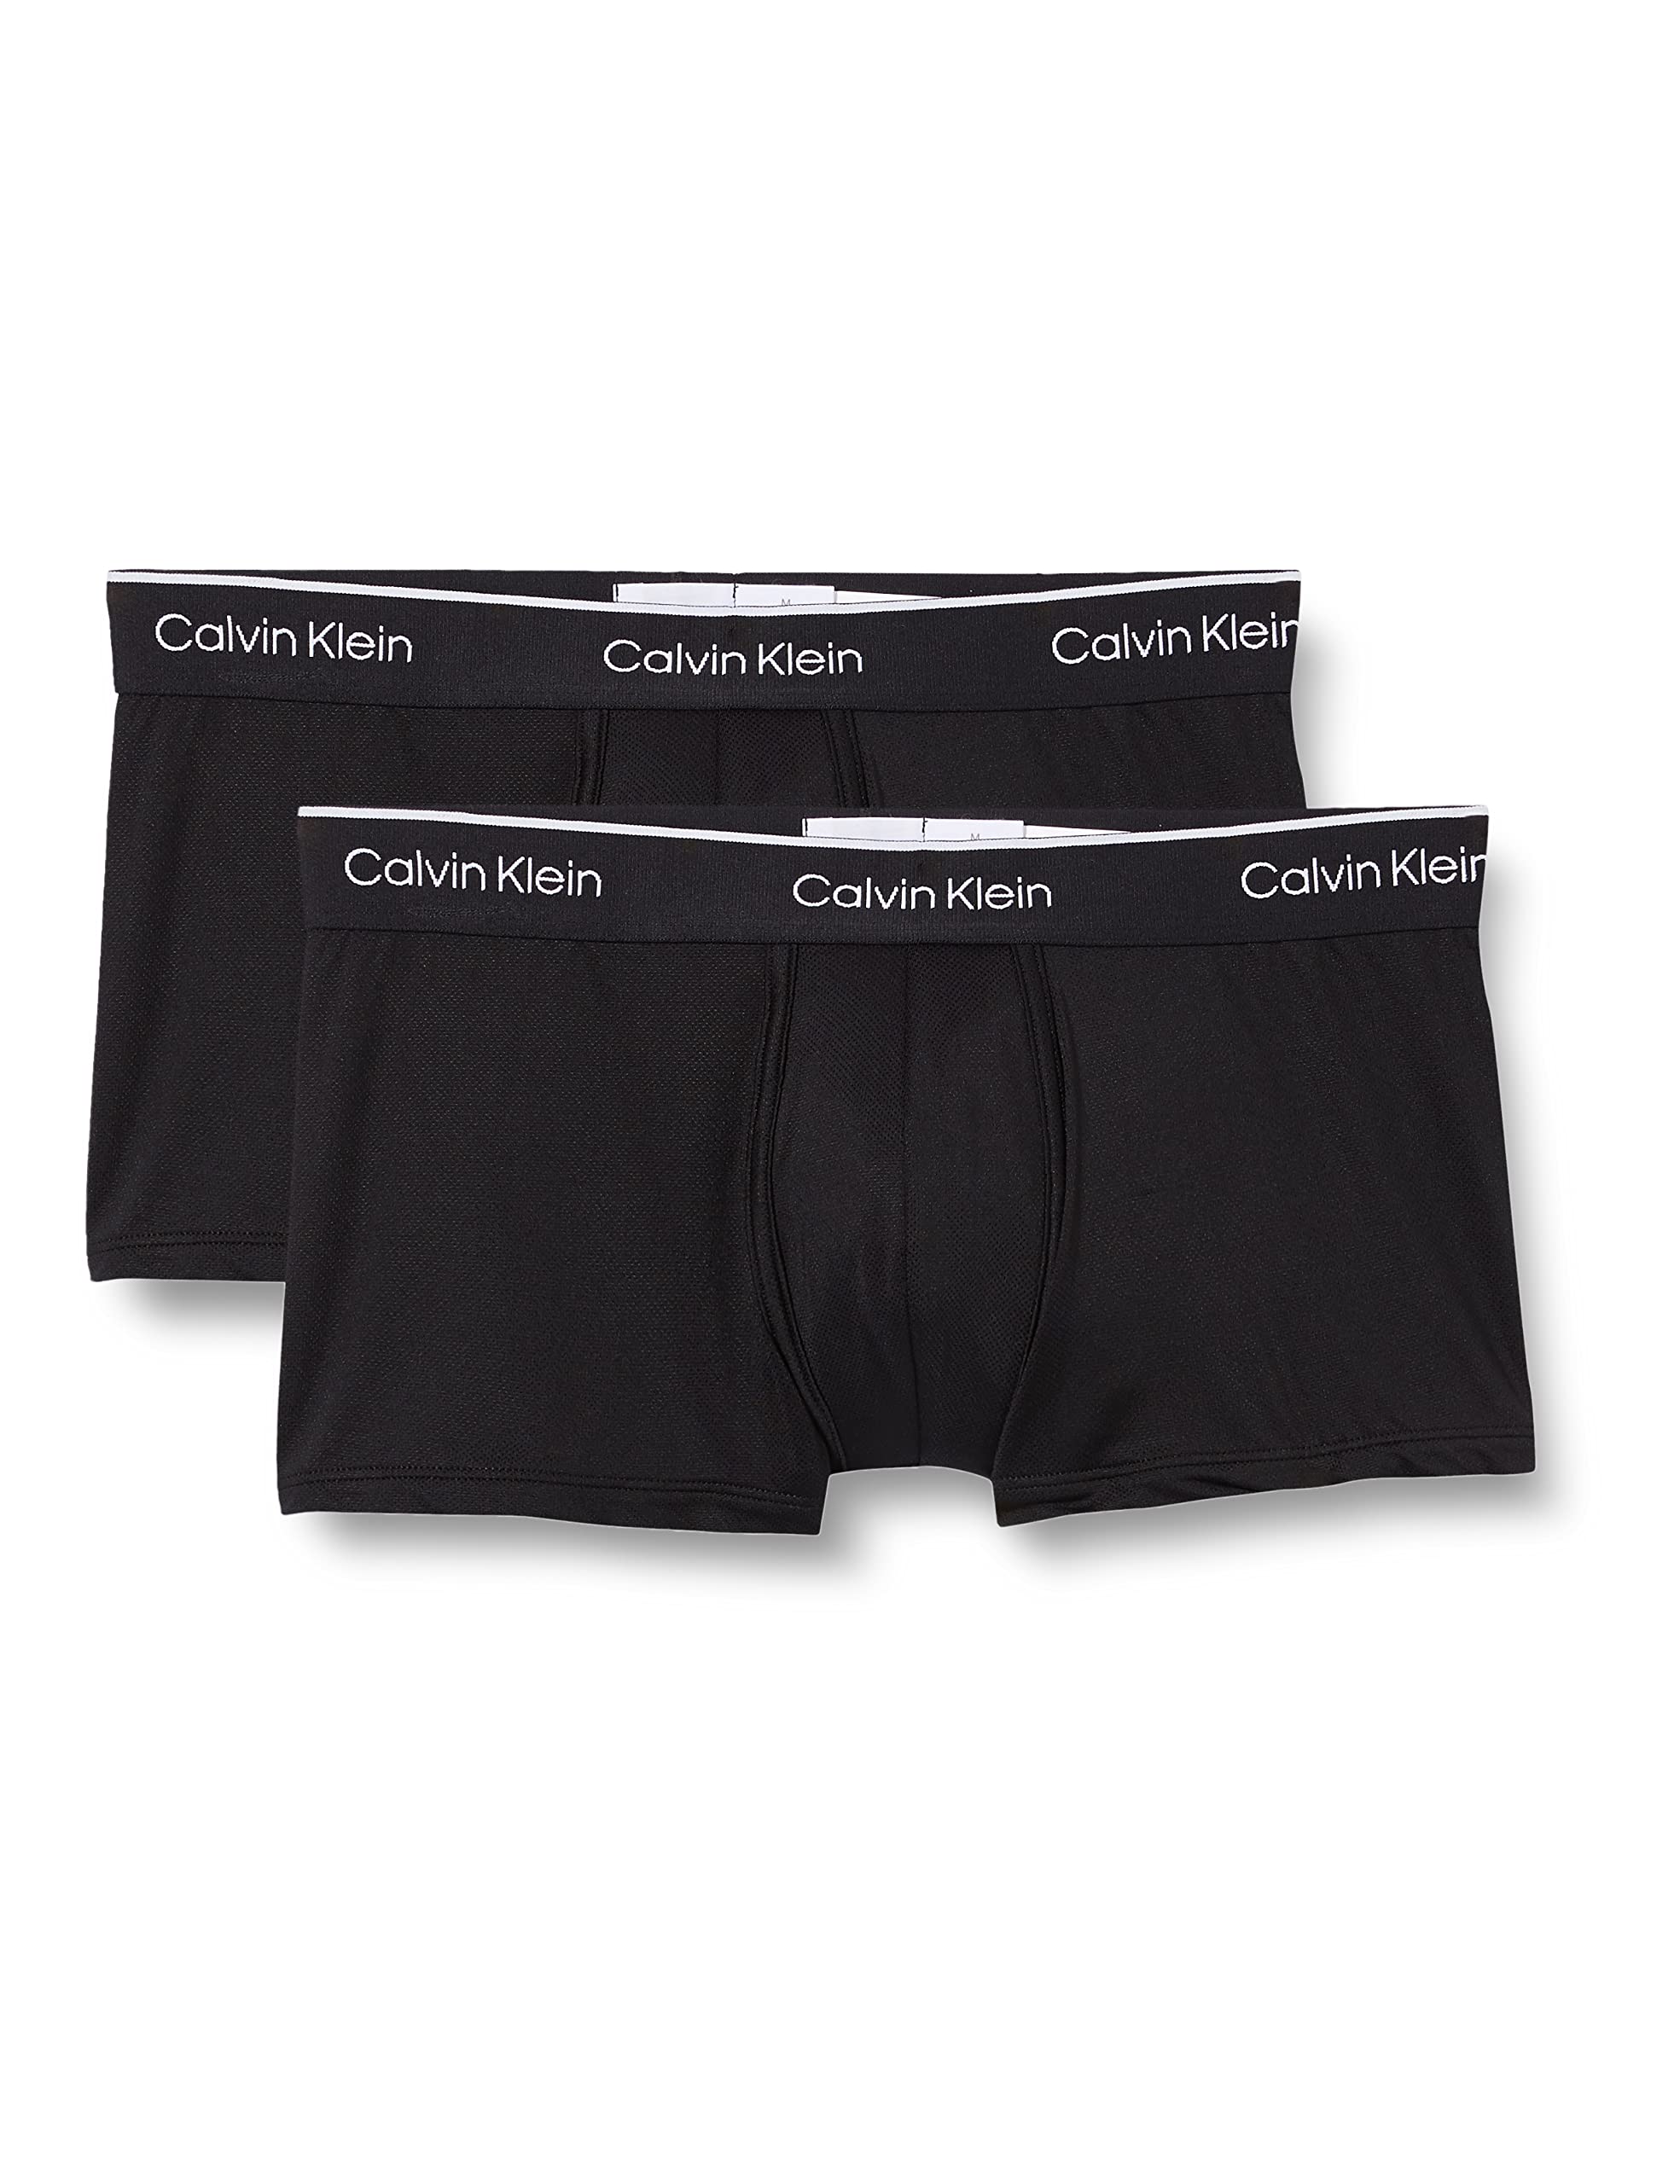 Calvin Klein Herren 2er Pack Boxershorts Low Rise Trunks mit Stretch, Schwarz (Black/Black), S